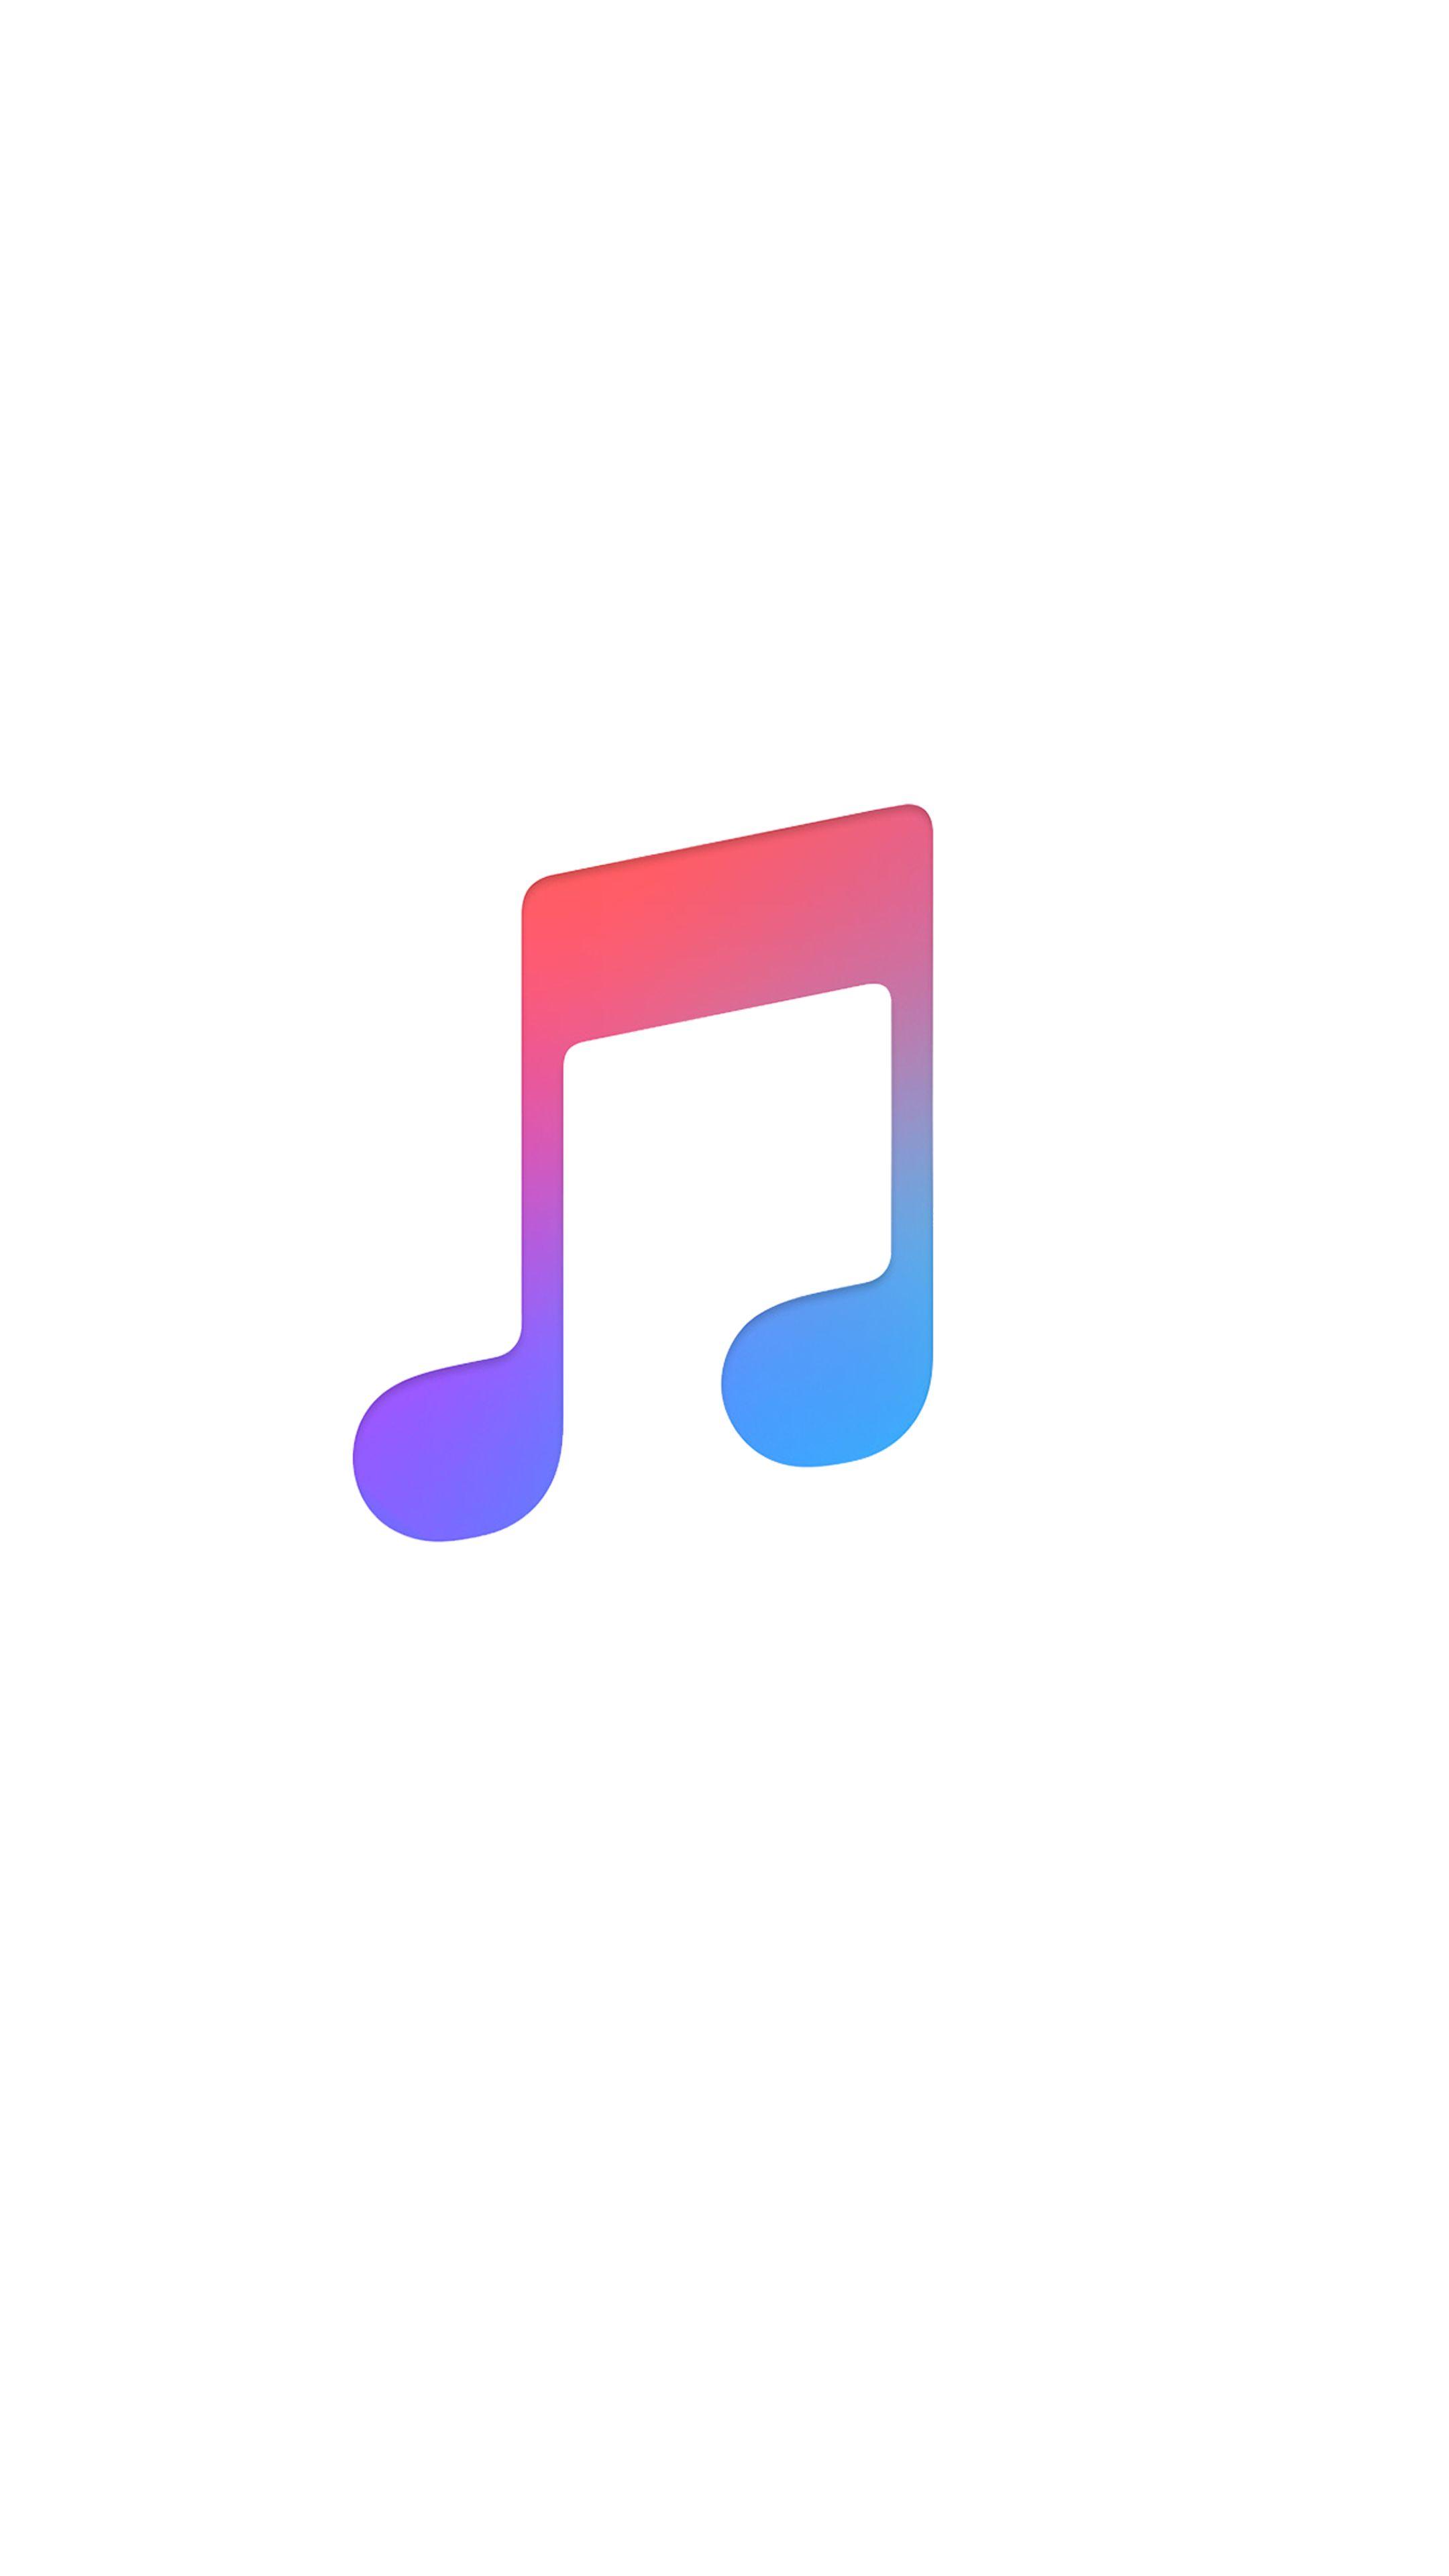 Apple Music Logo - Apple music logo wallpaper | Music logo, Apple wallpaper, Music ...